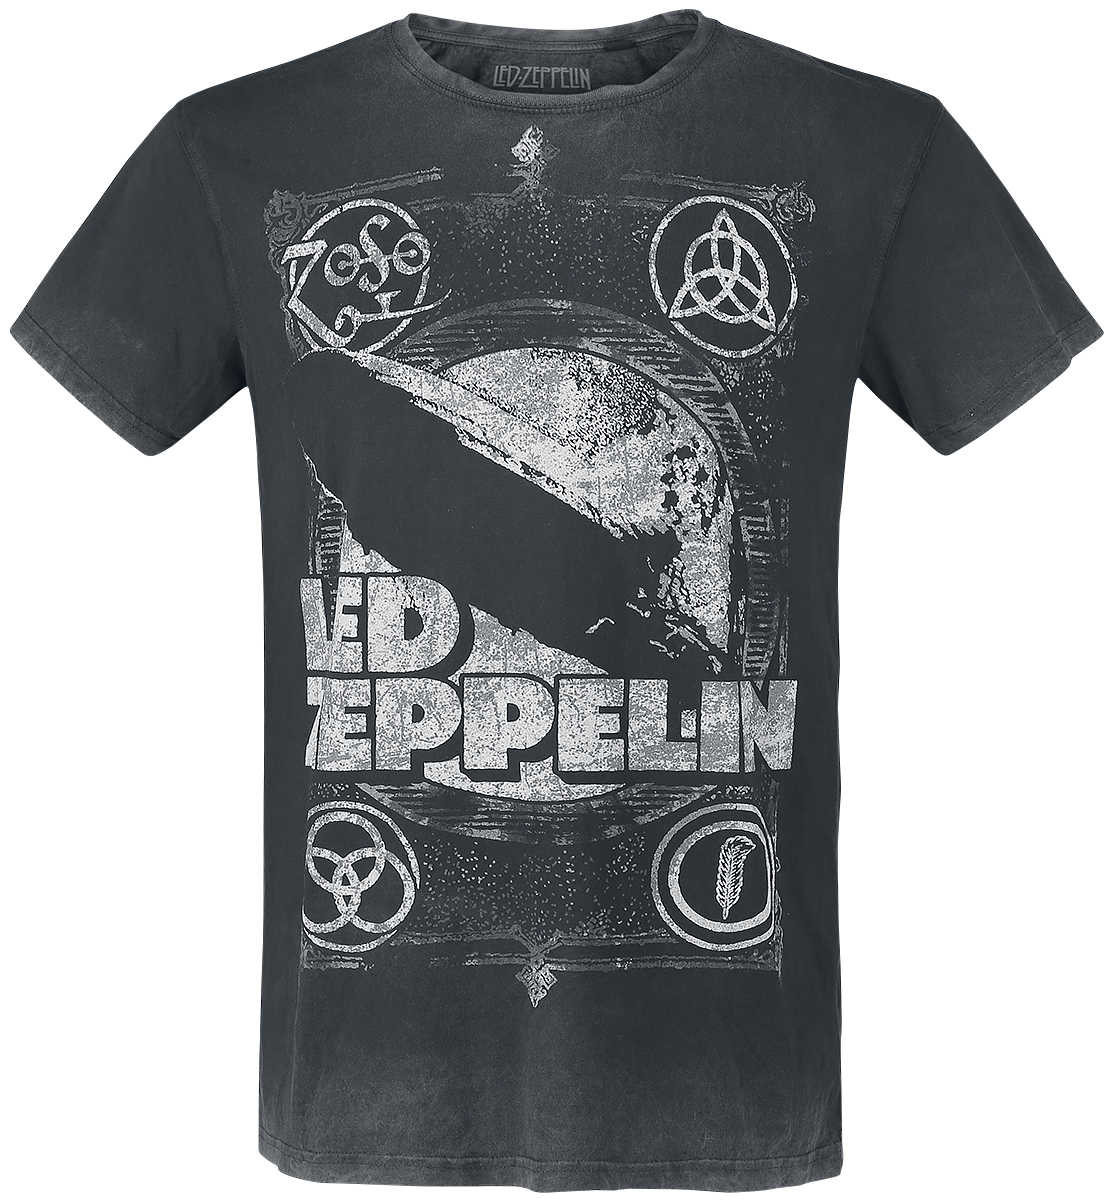 Led Zeppelin - Shook Me - T-Shirt - black-grey image